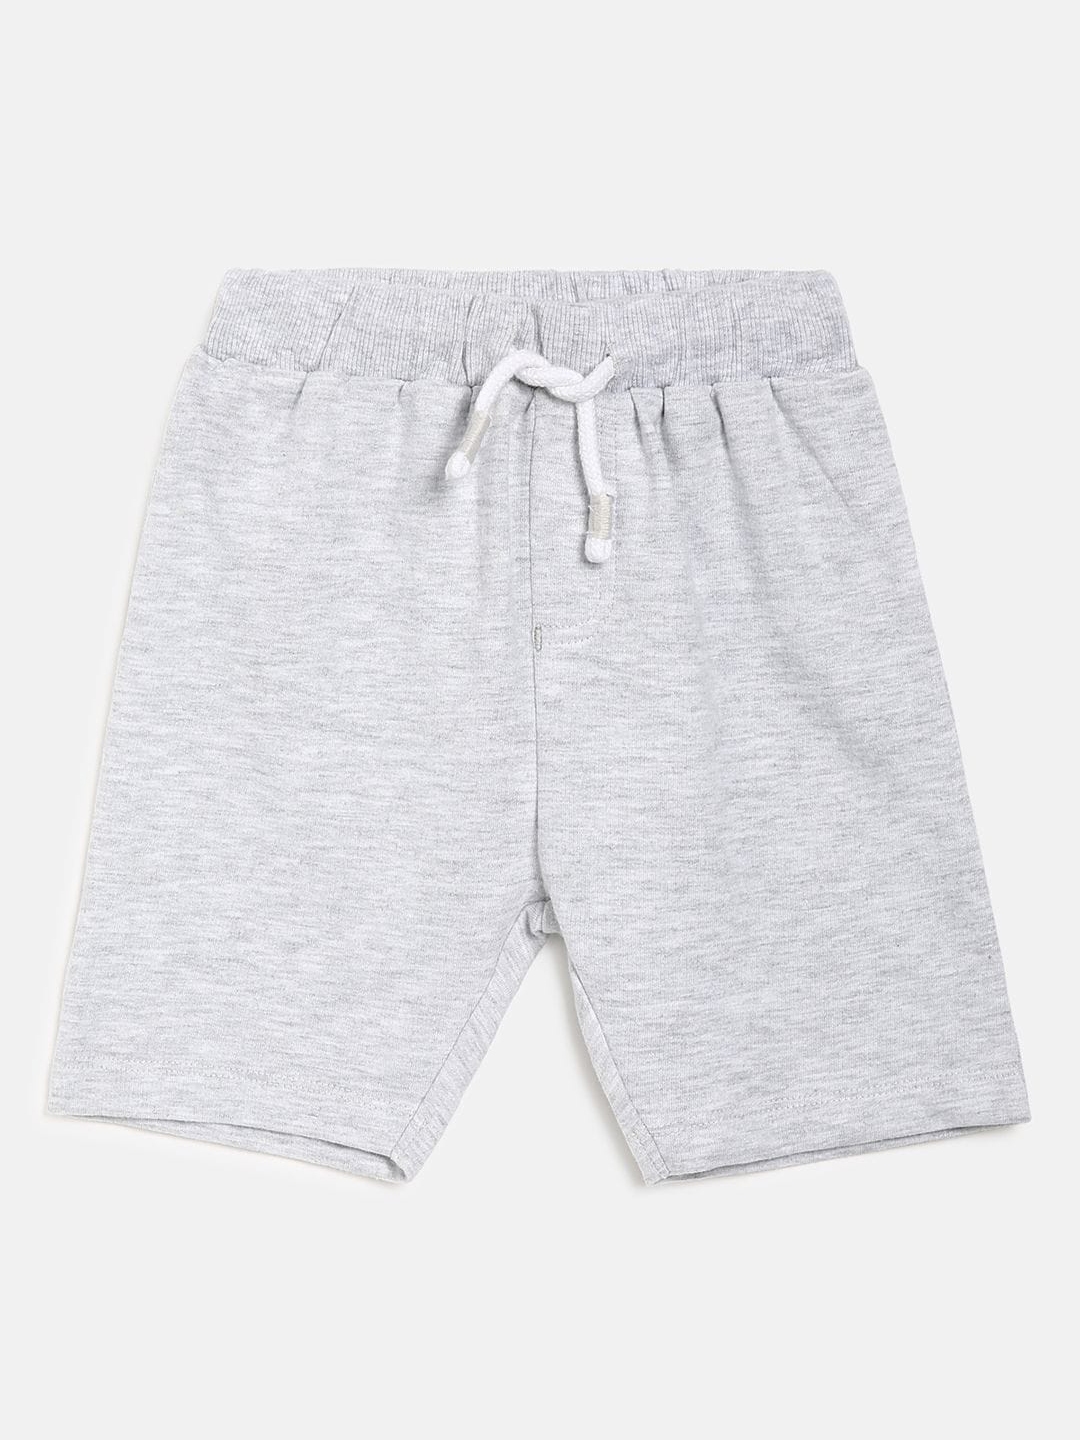 Buy MINI KLUB Boys Grey Shorts - Shorts for Boys 17059358 | Myntra